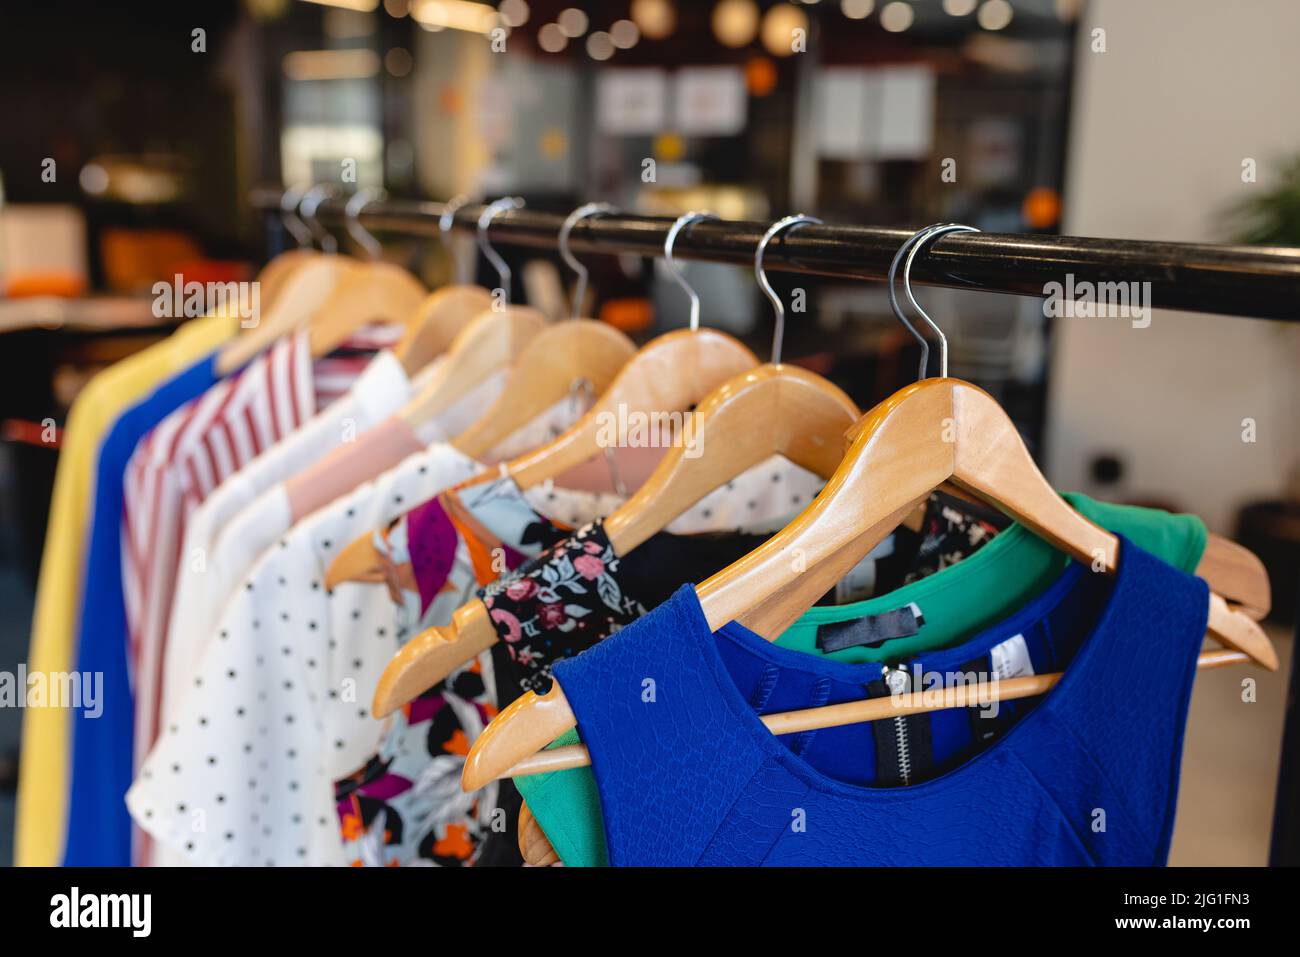 Divers vêtements suspendus sur des coathangers en studio de mode Banque D'Images